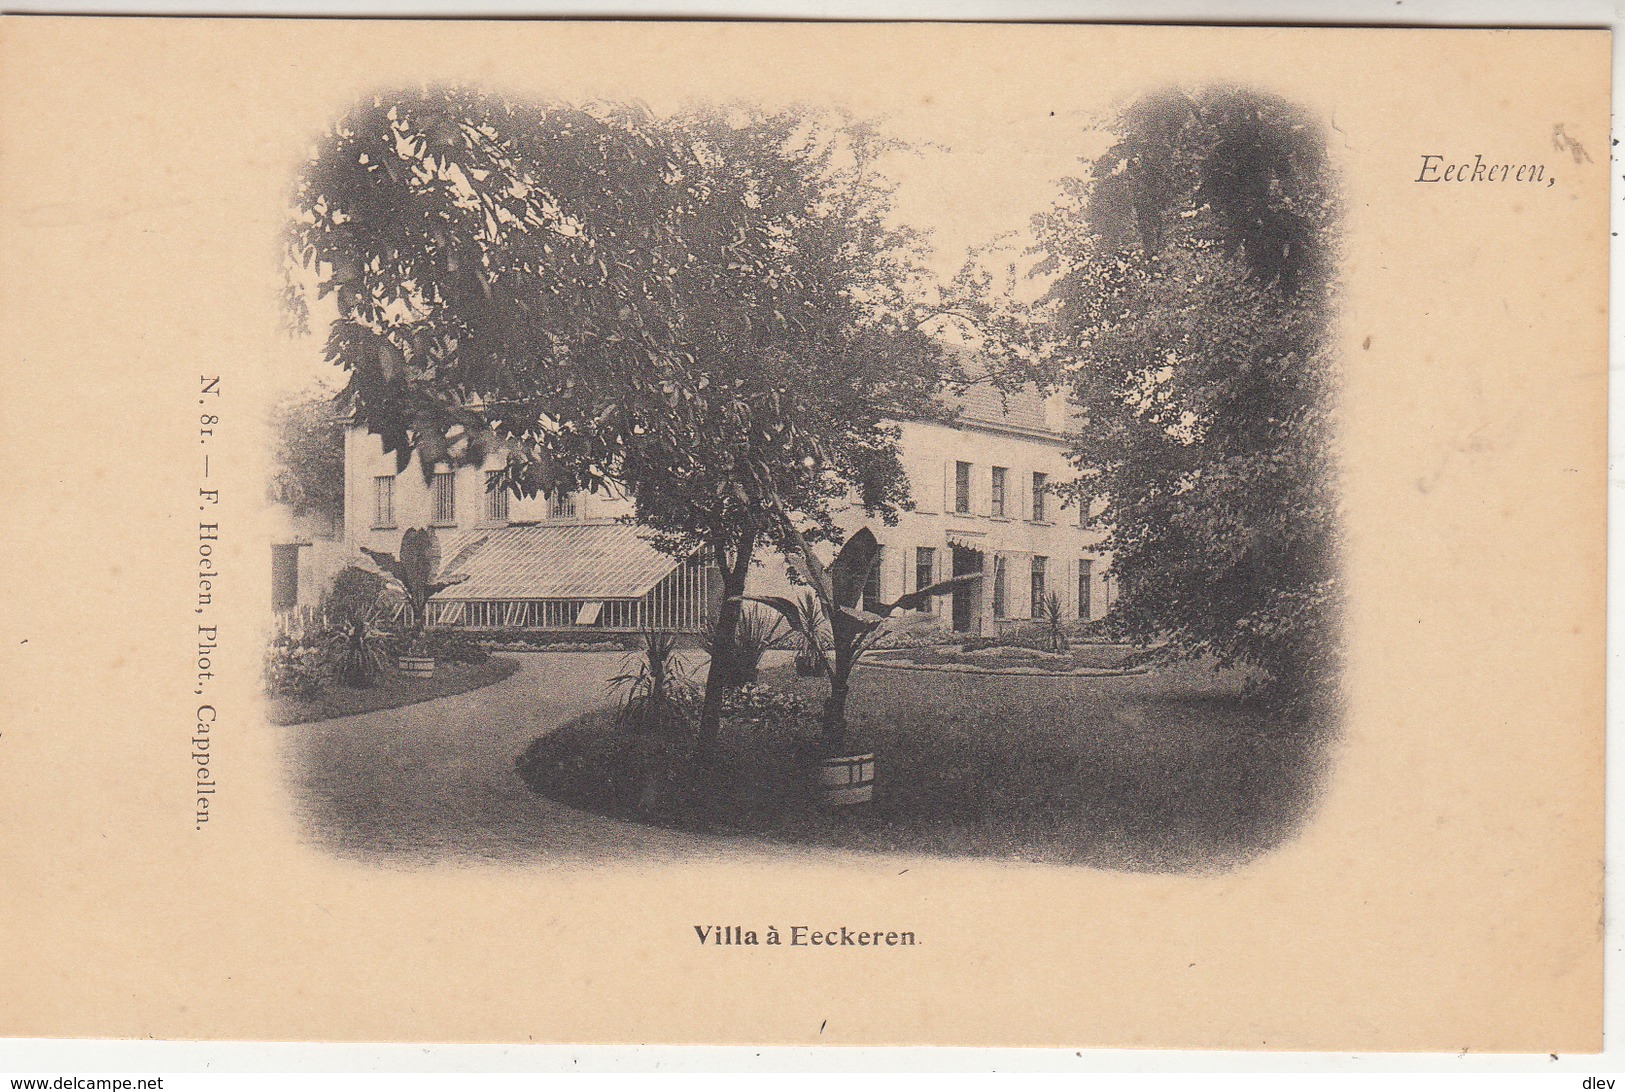 Eeckeren - Villa à Eeckeren - F. Hoelen, Phot. Cappellen N. 81 - Antwerpen